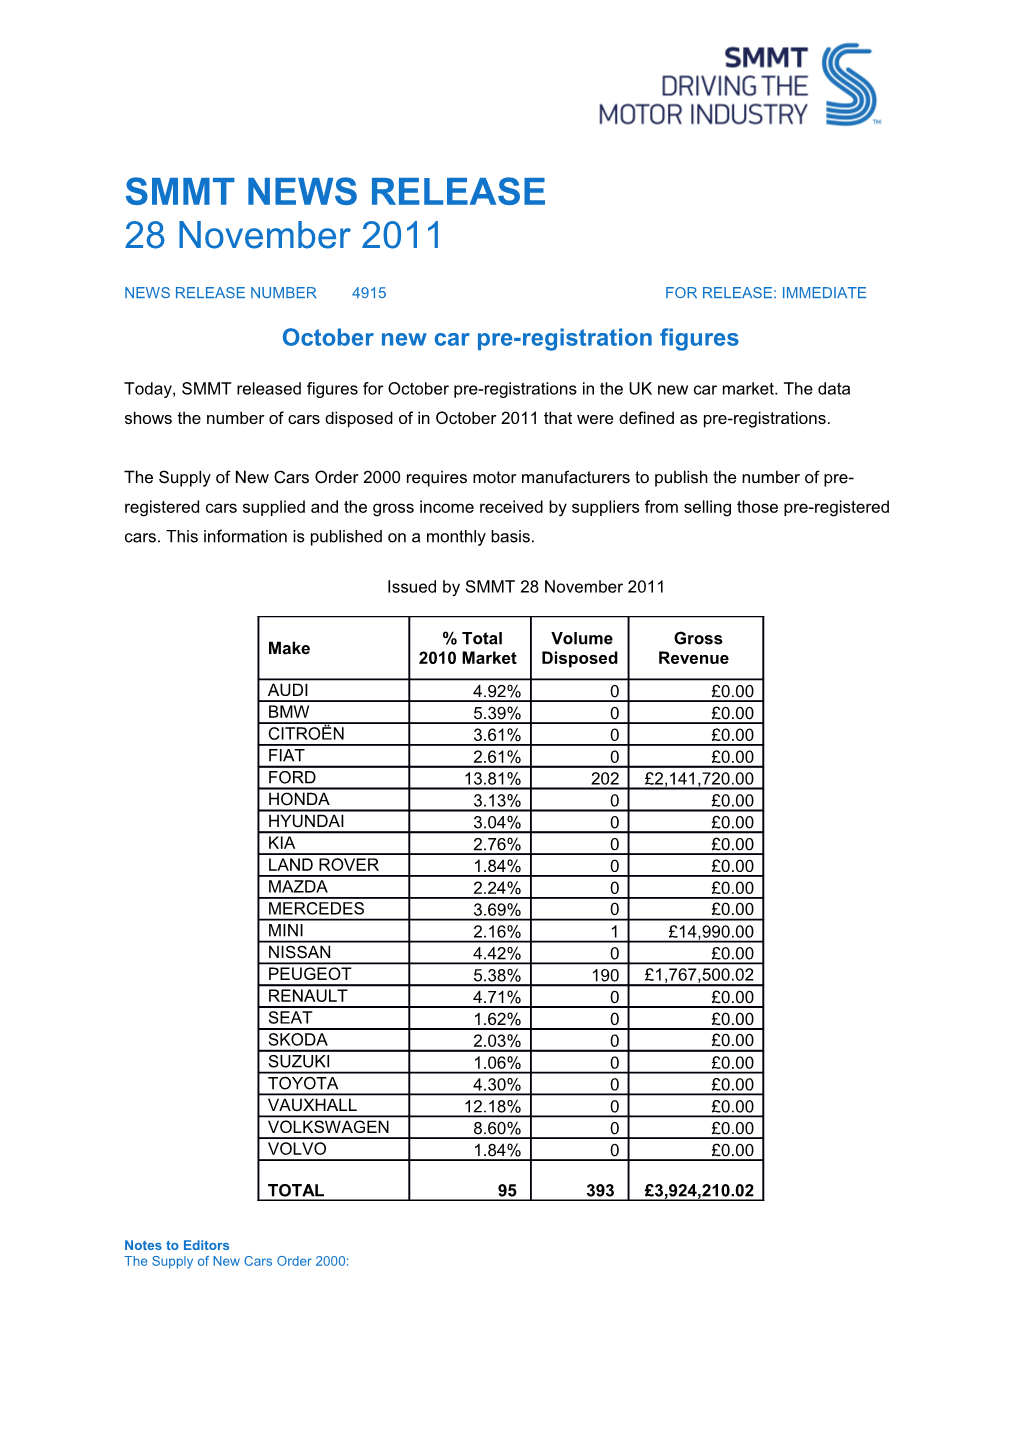 October New Car Pre-Registration Figures